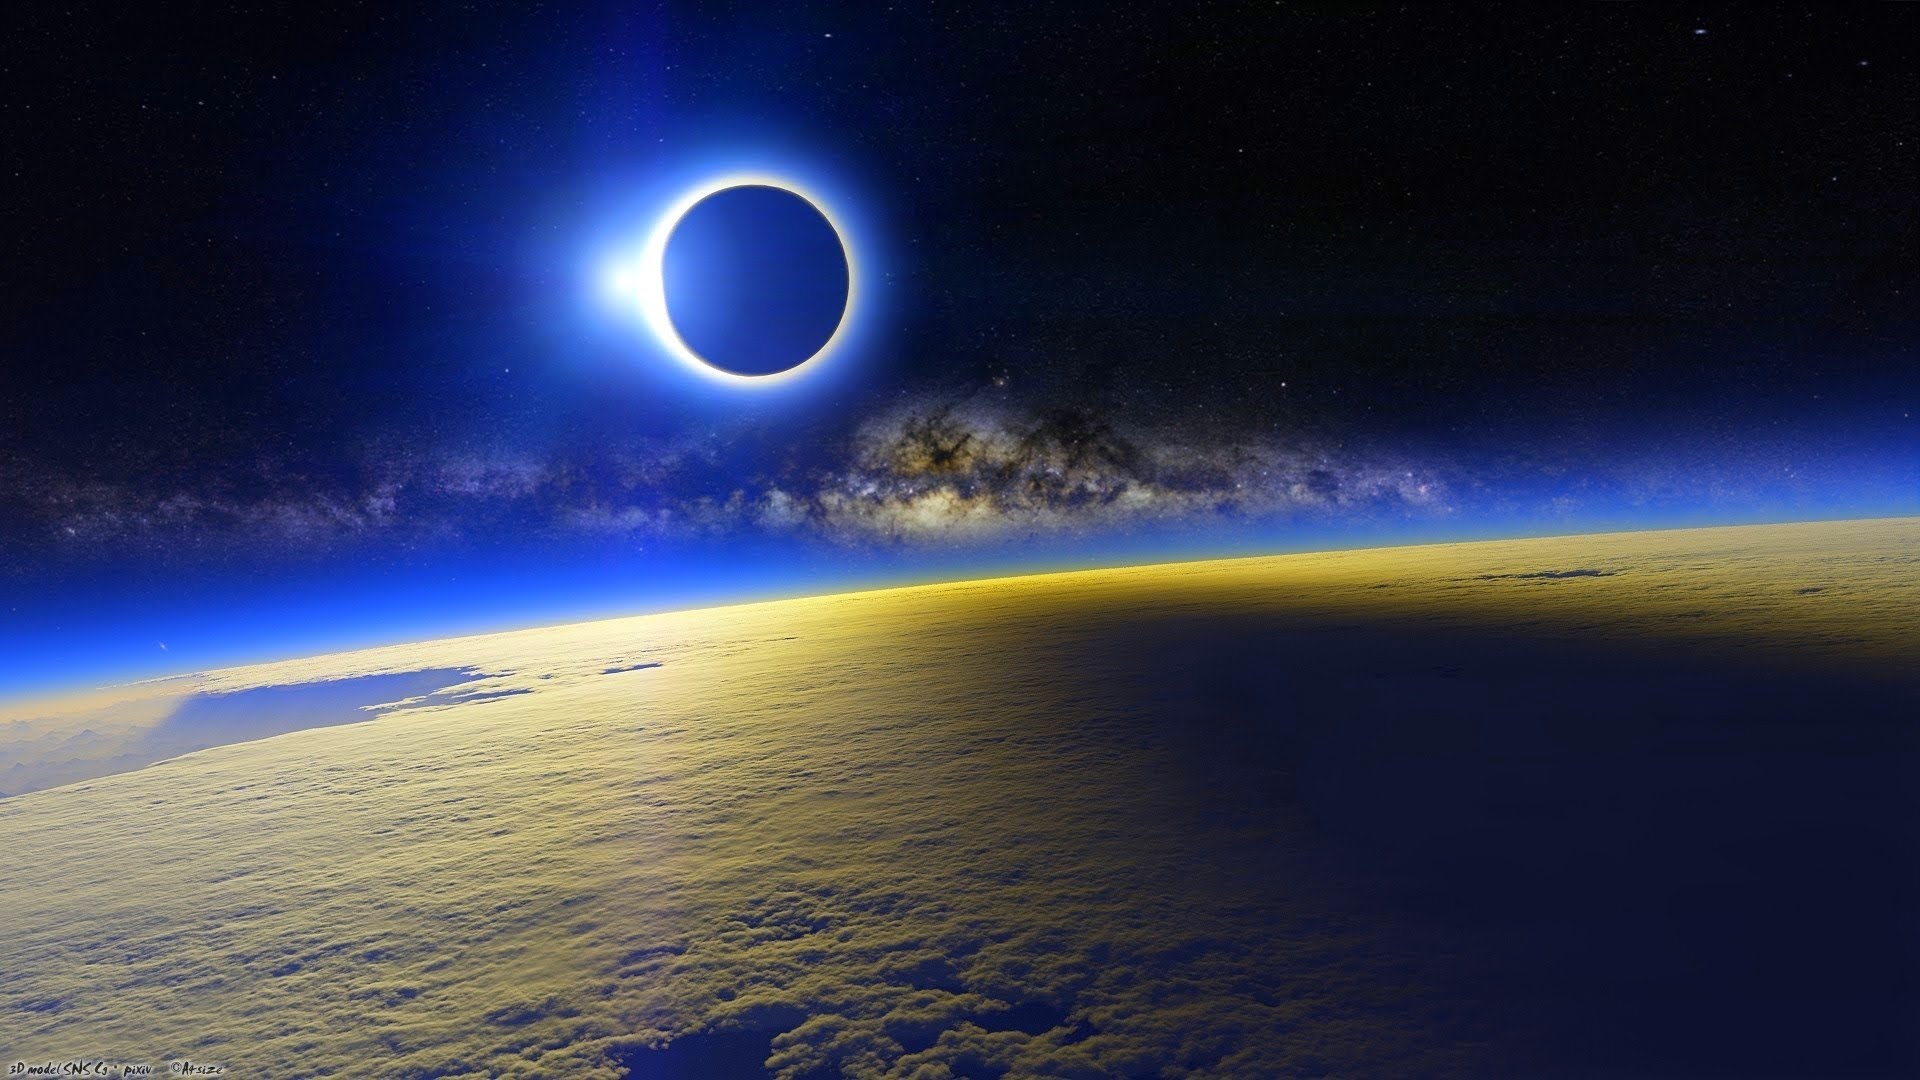 Matahari terutup bulan saat terjadi gerhana matahari [image source]